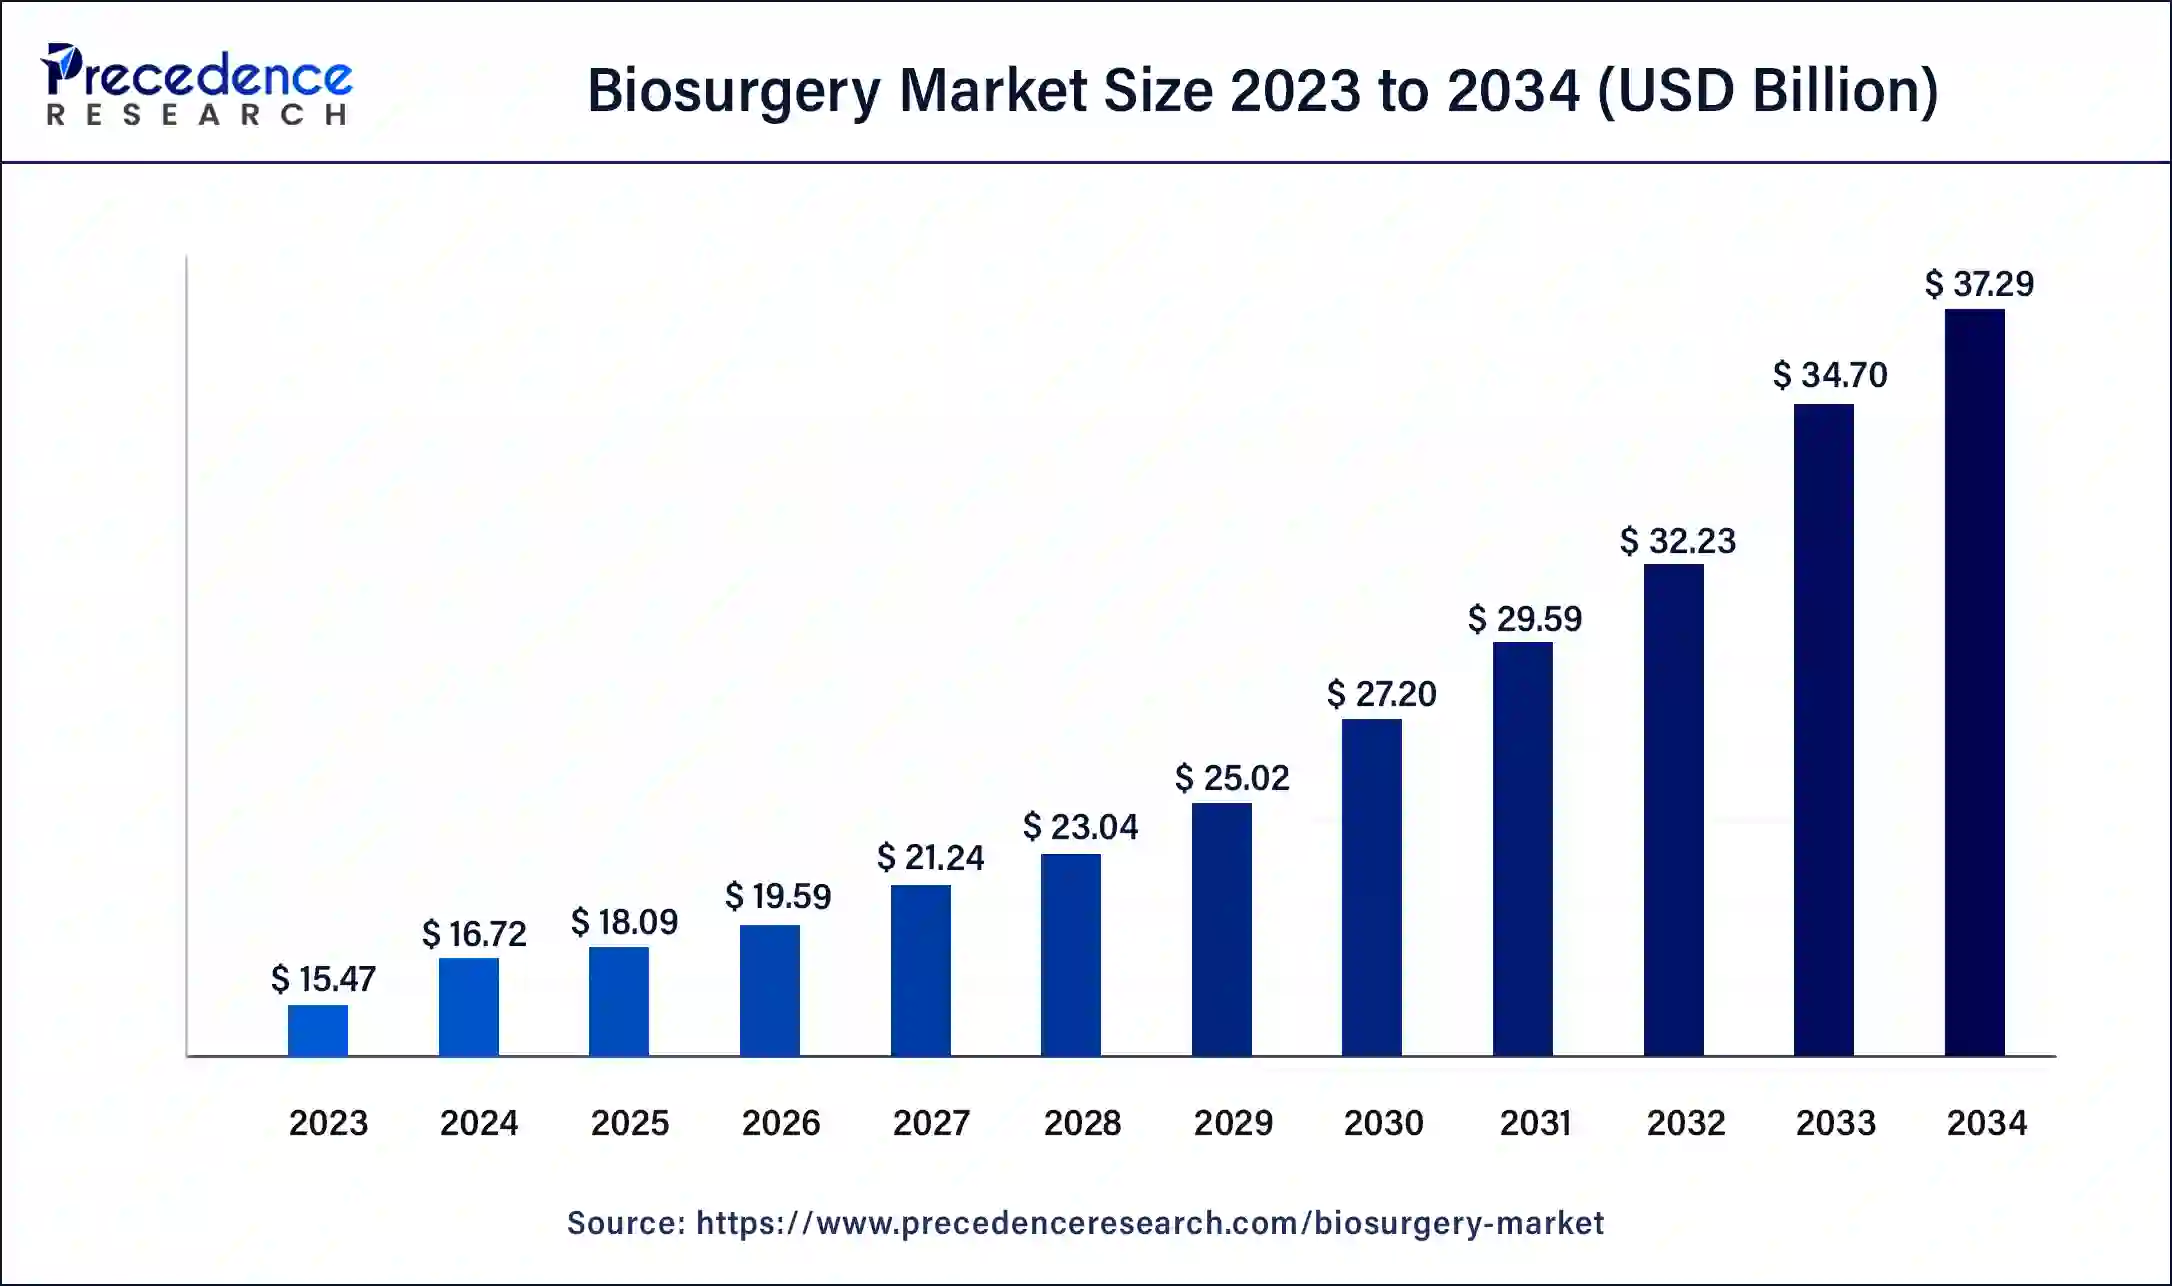 Biosurgery Market Size 2024 To 2034